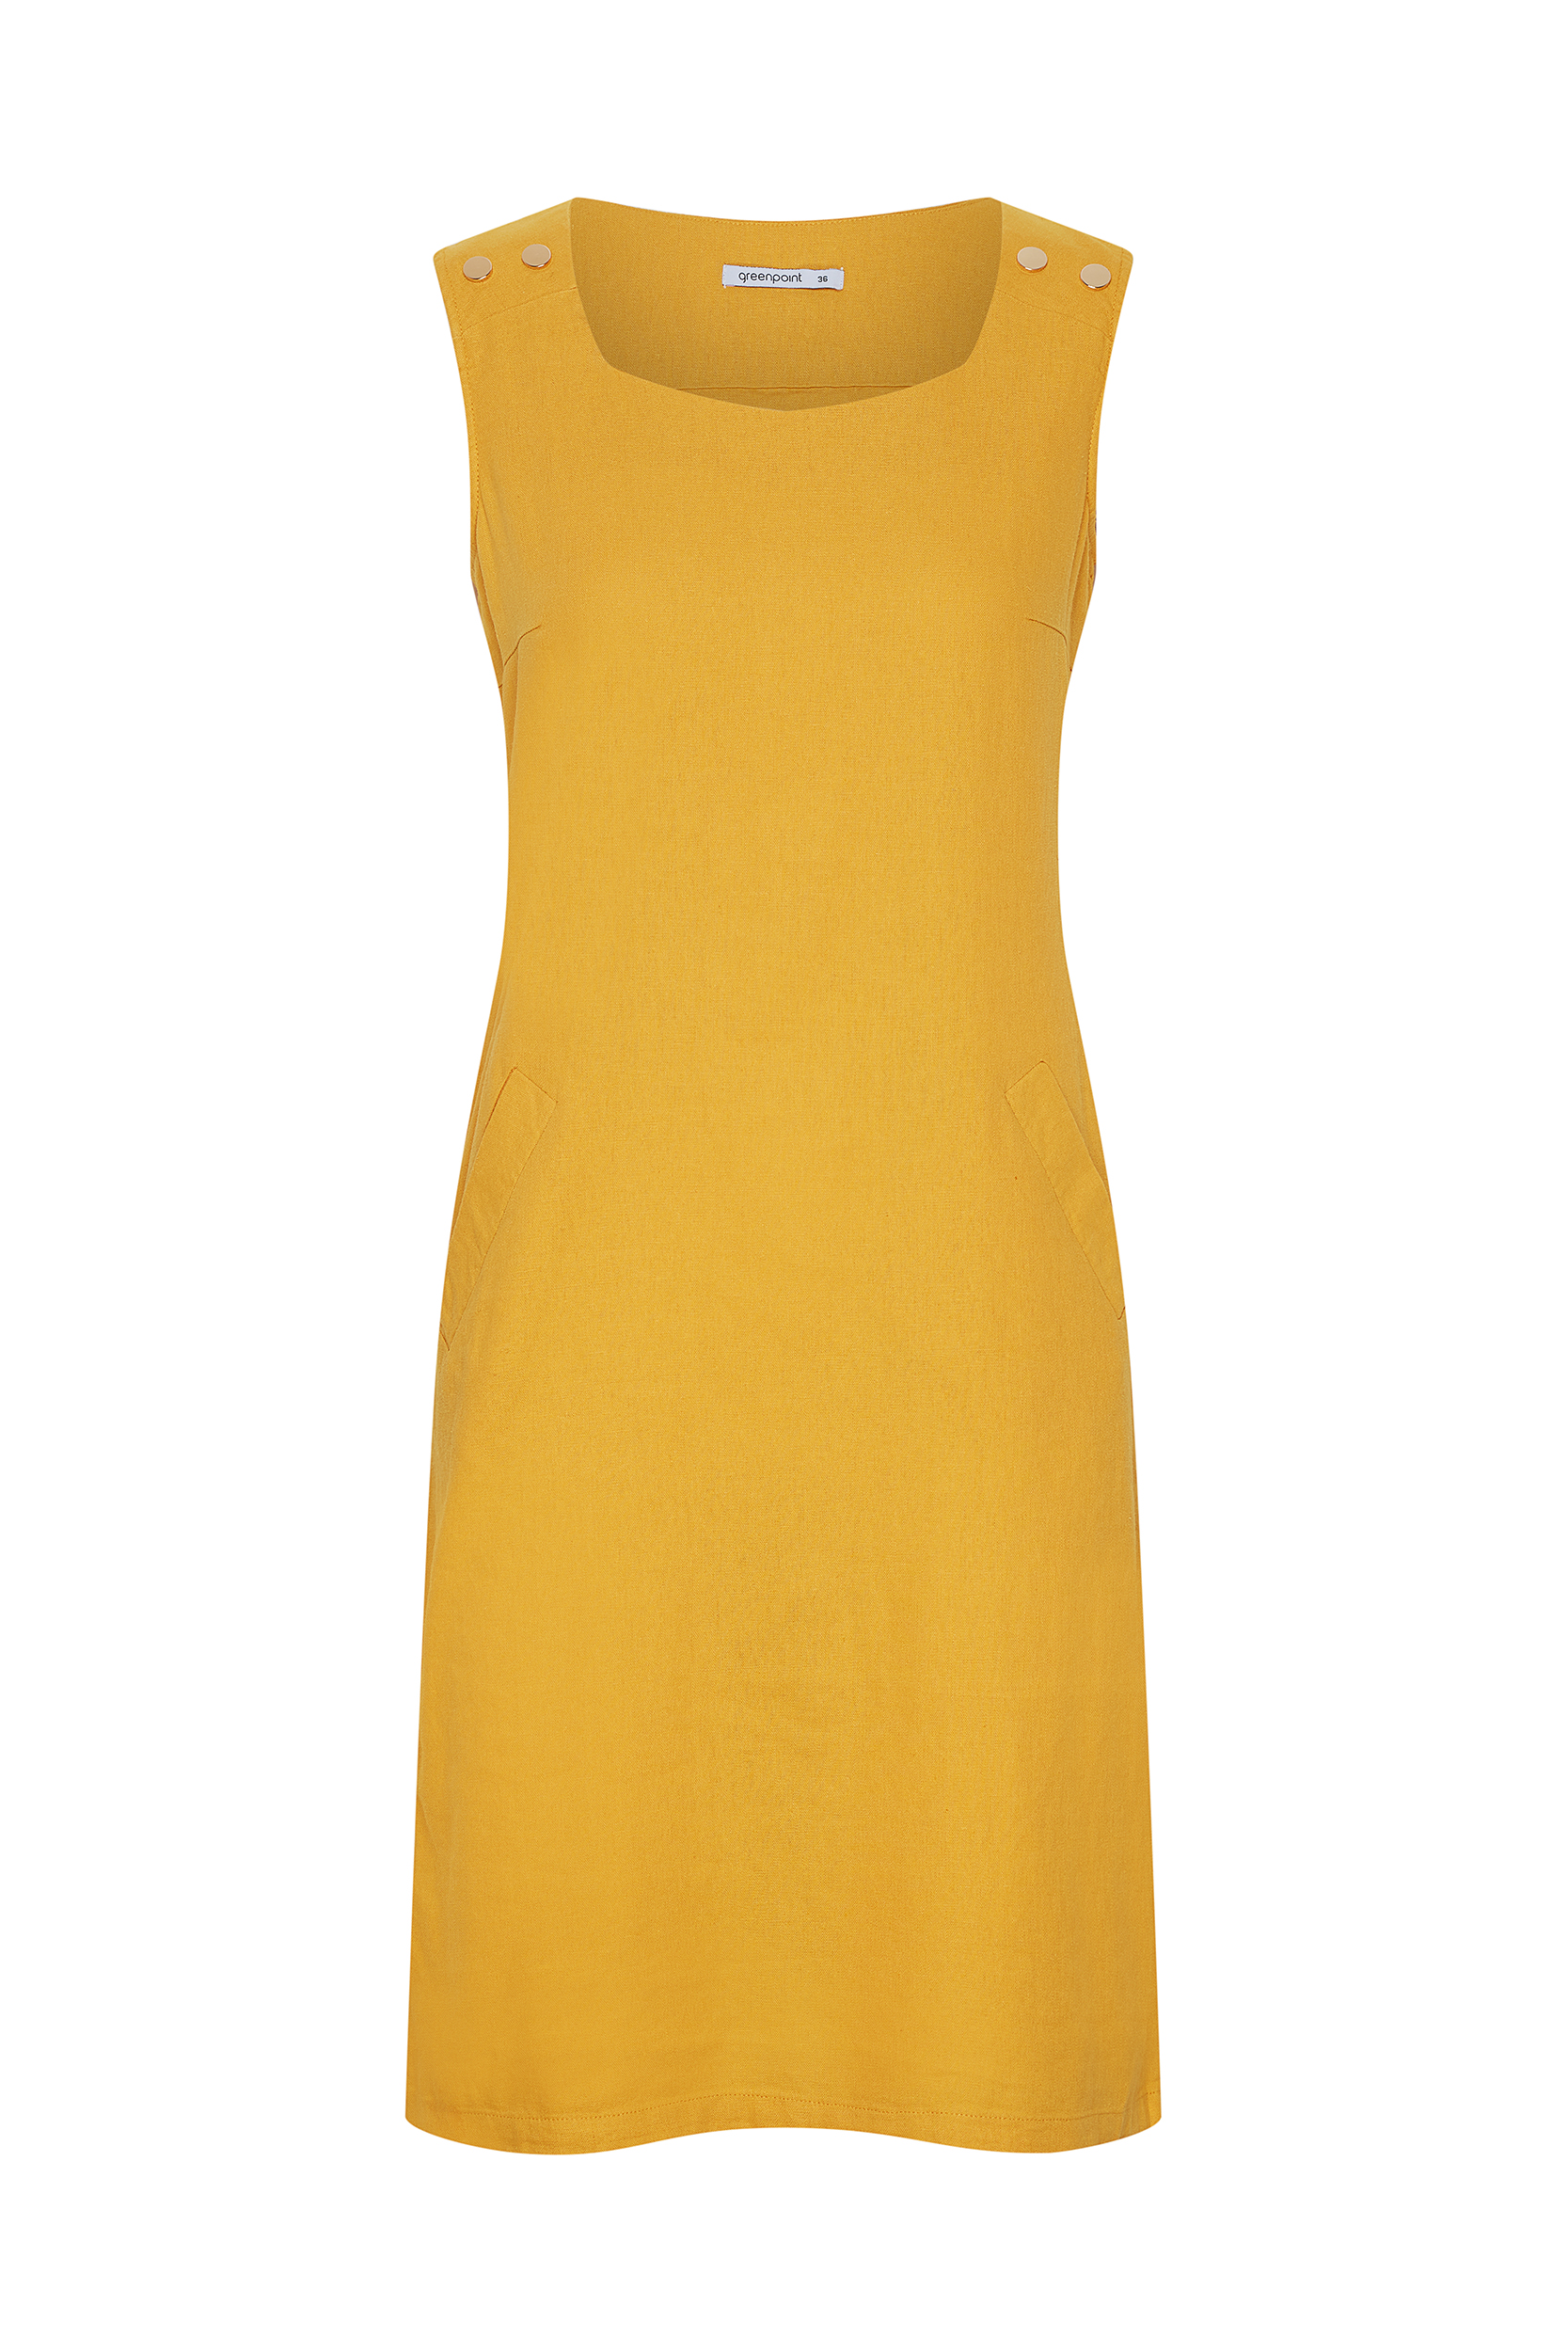 Żółta sukienka z dekoltem typu karo